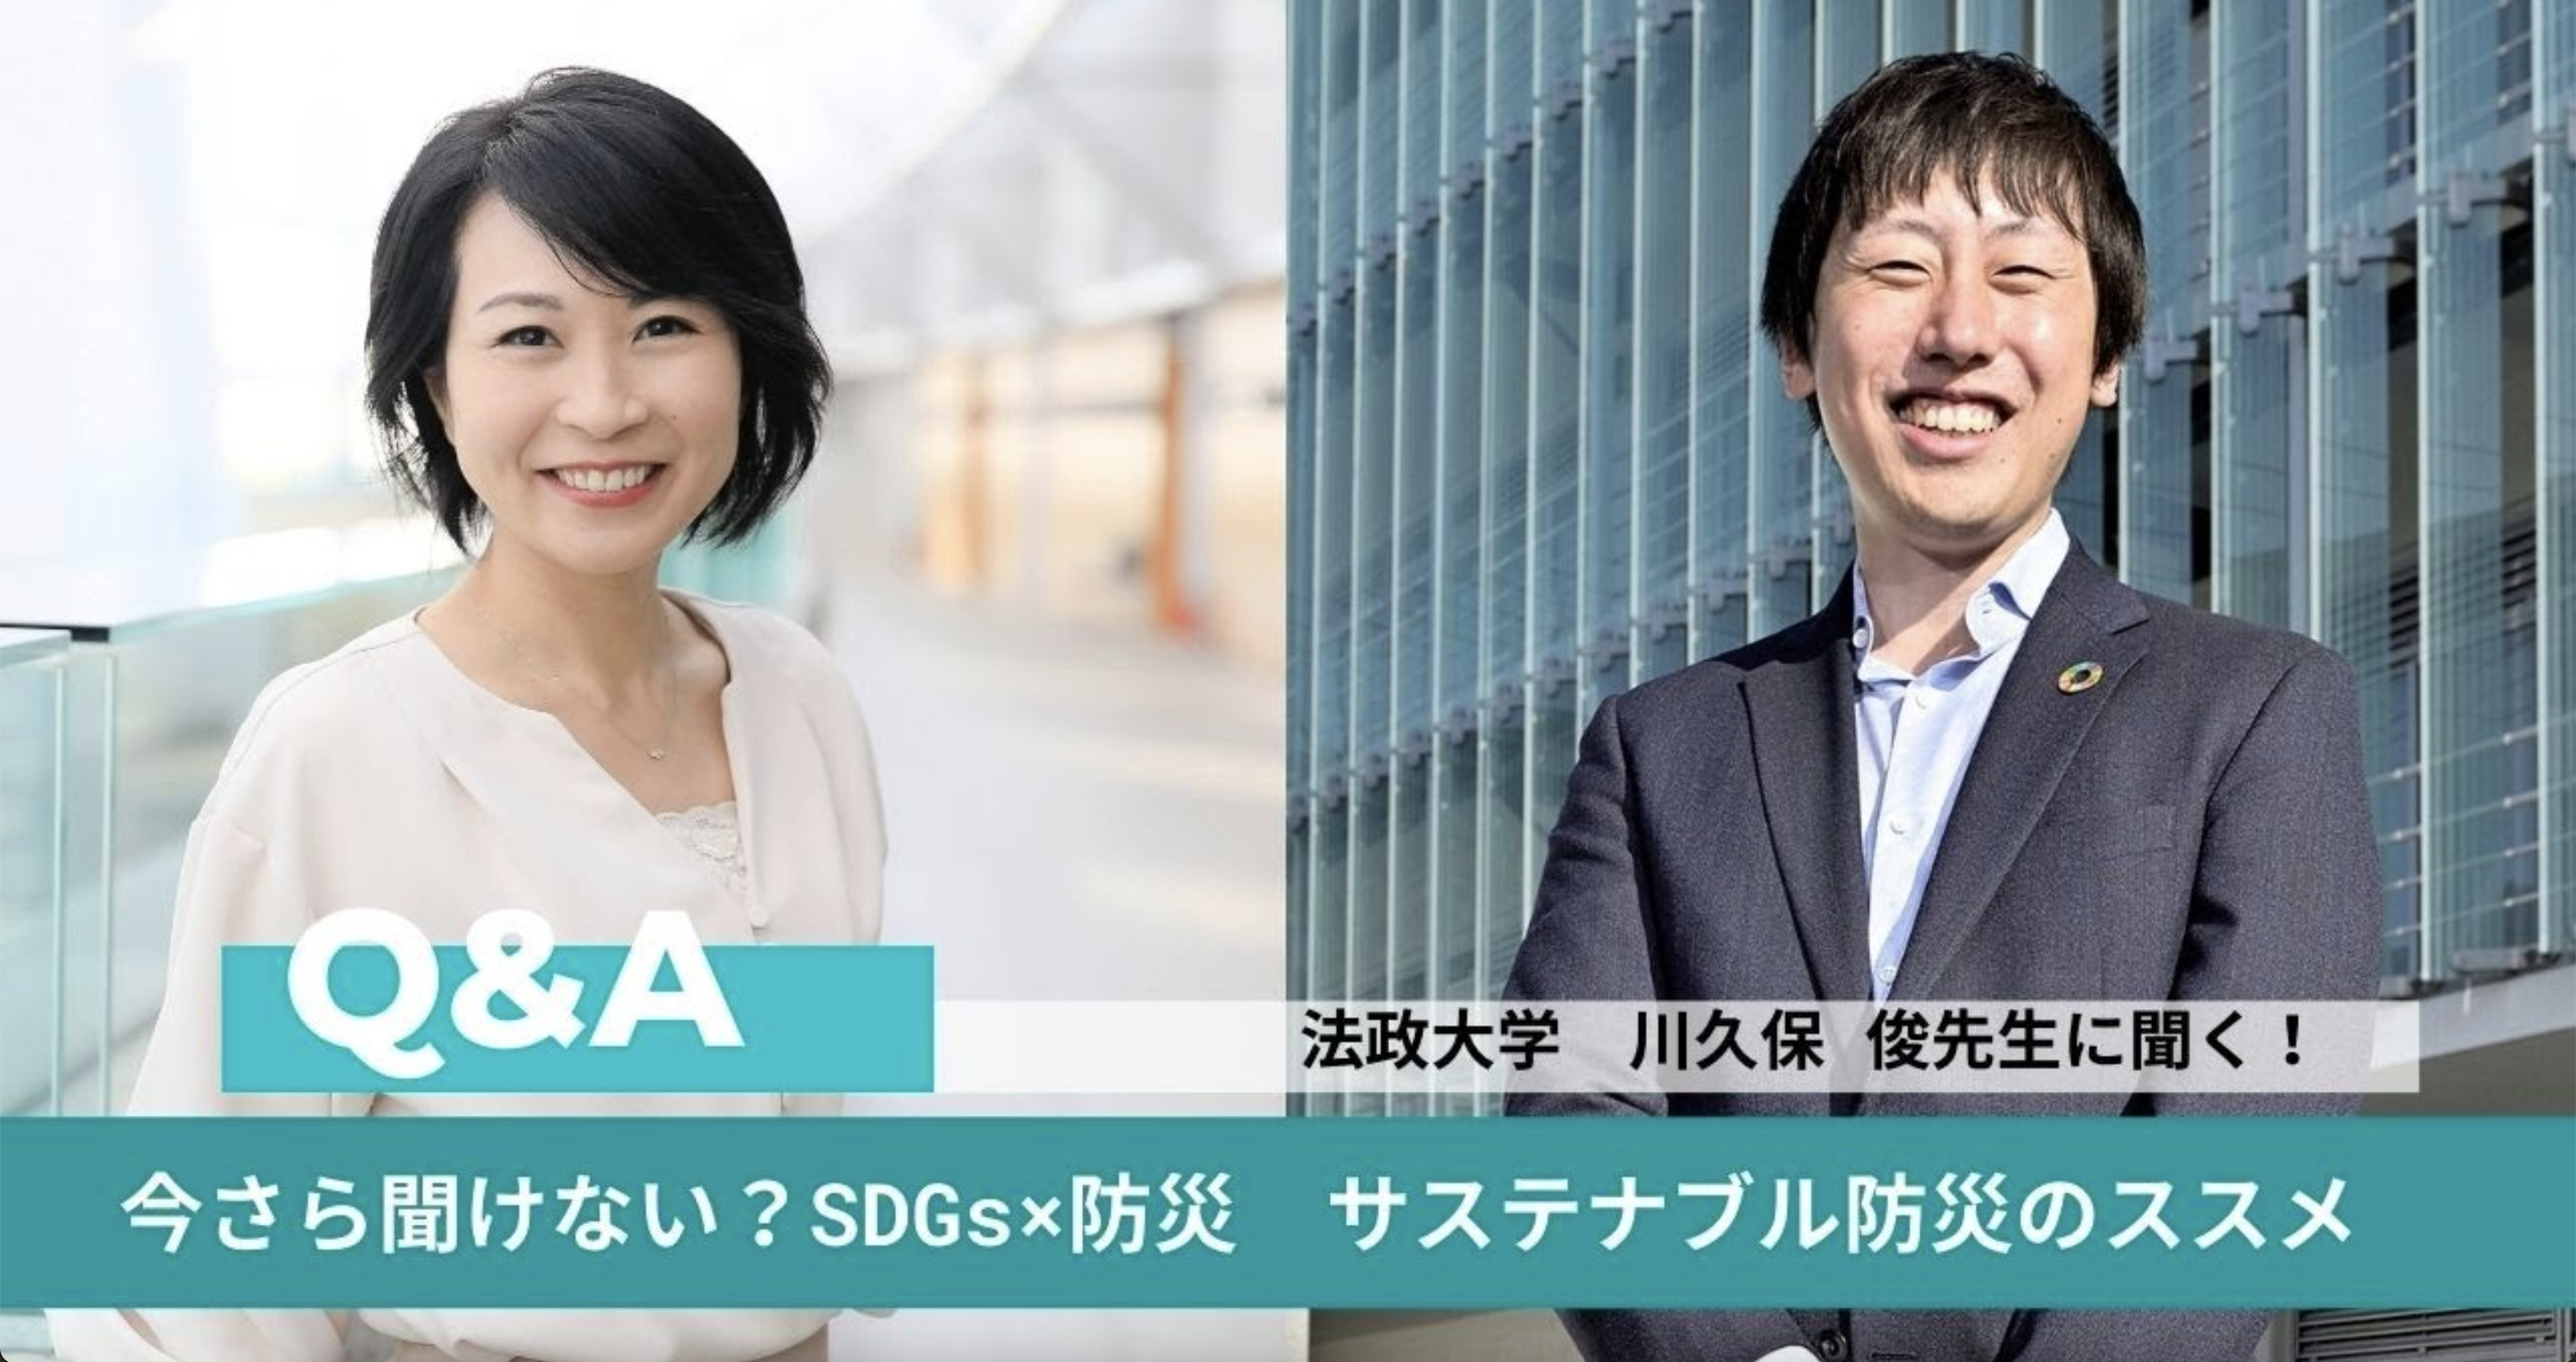 SDGs×防災 川久保先生へのインタビューの動画サムネイル